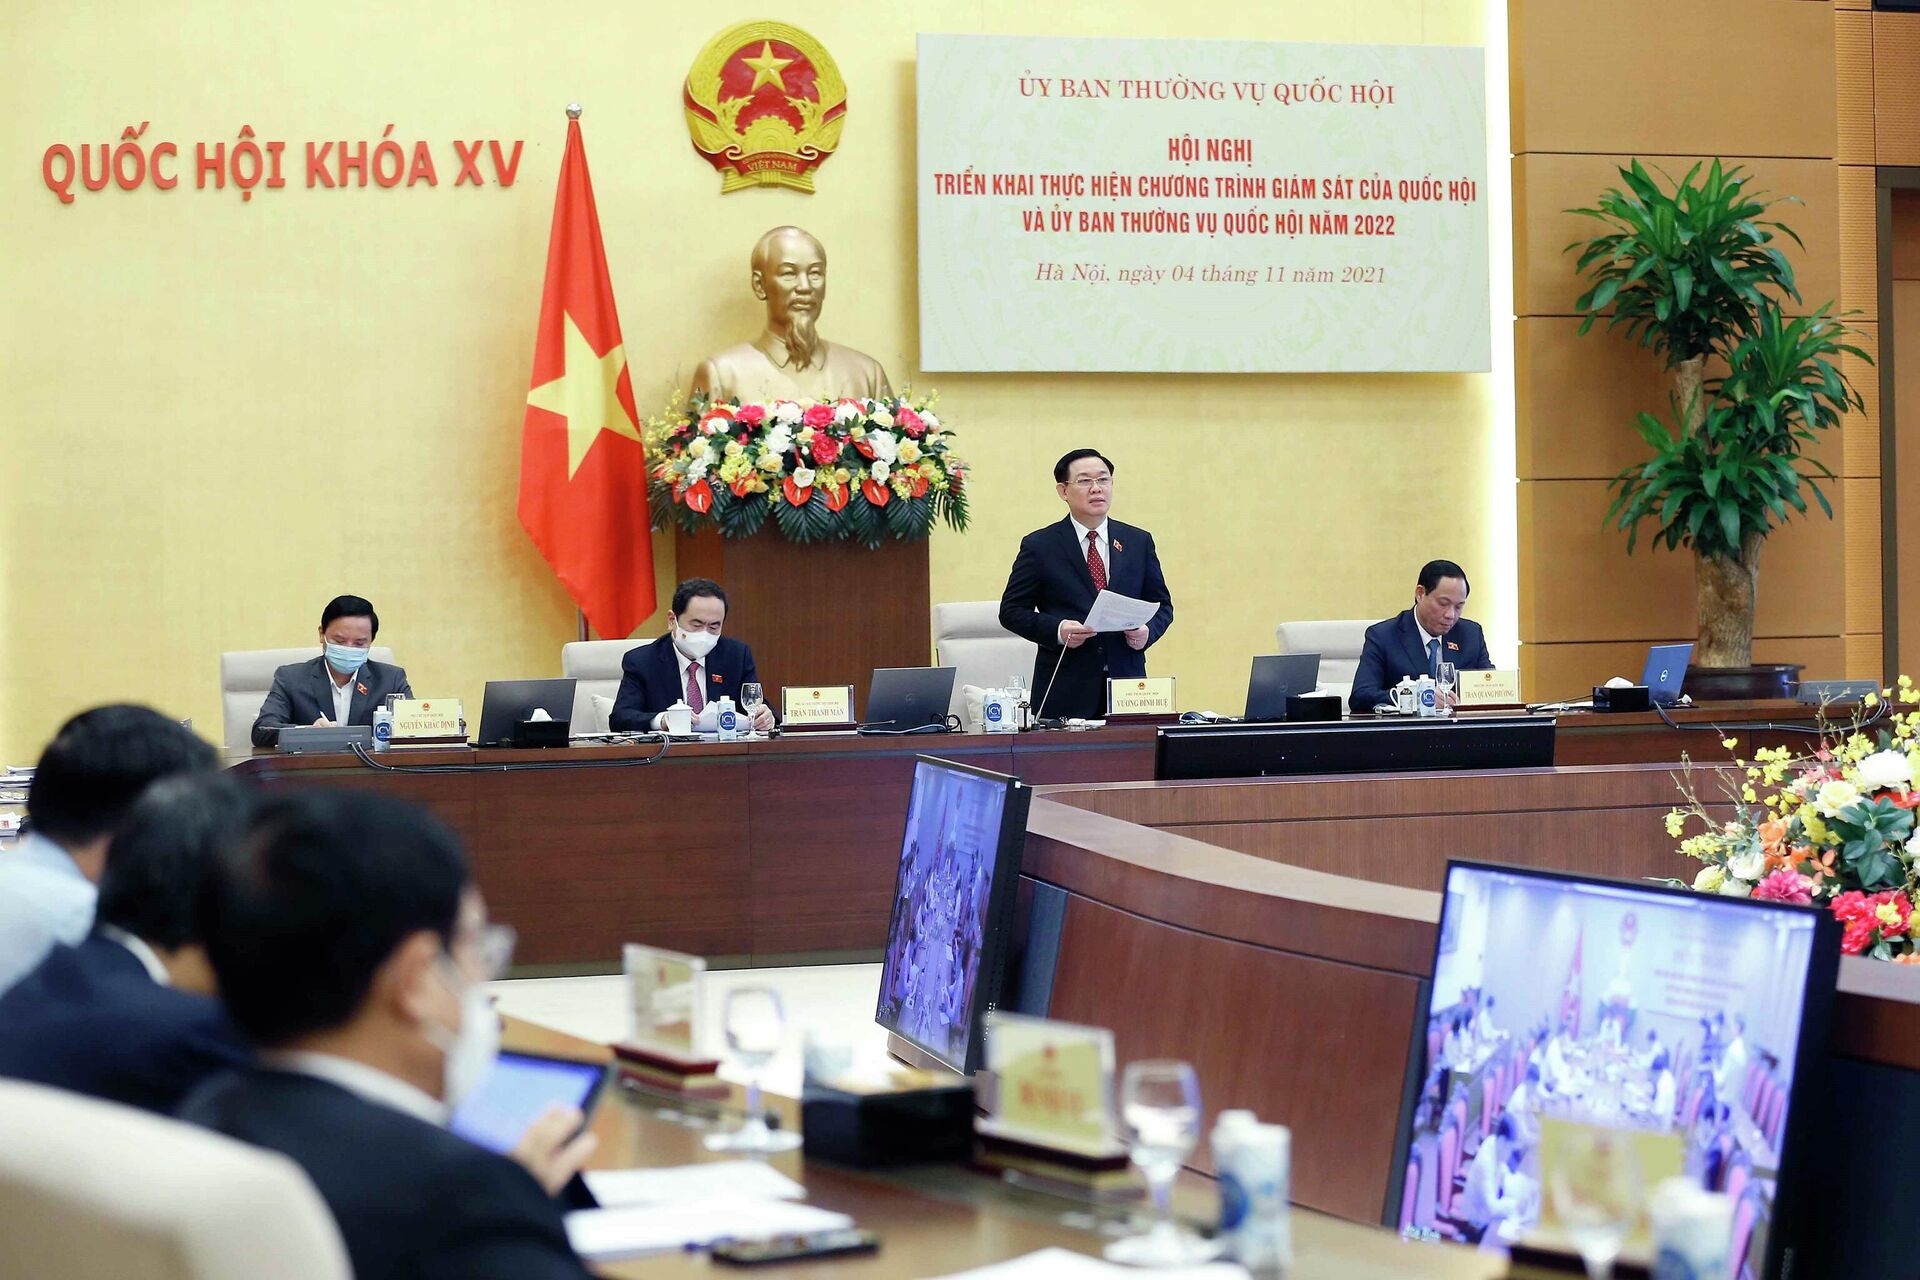 Chủ tịch Quốc hội Vương Đình Huệ chủ trì Hội nghị triển khai thực hiện chương trình giám sát của Quốc hội năm 2022 - Sputnik Việt Nam, 1920, 04.11.2021